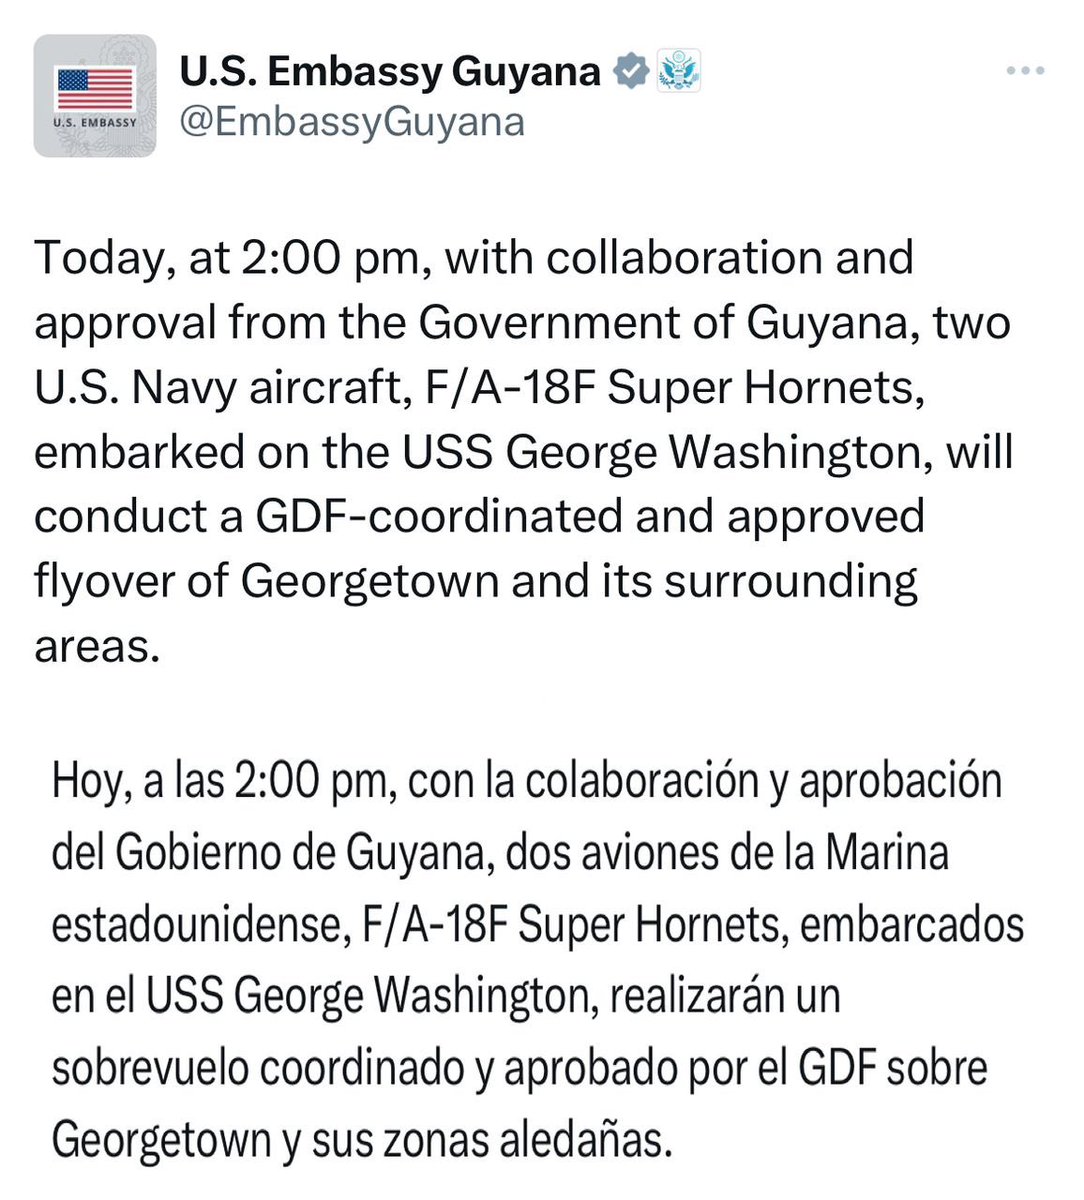 Ya advertíamos sobre la amenaza a la paz regional que representa la presencia del portaaviones USS George Washington en el Caribe. Ahora anuncian el despliegue de aviones F-18 para sobrevolar “Georgetown y sus alrededores”. La Fuerza Armada Nacional Bolivariana rechaza